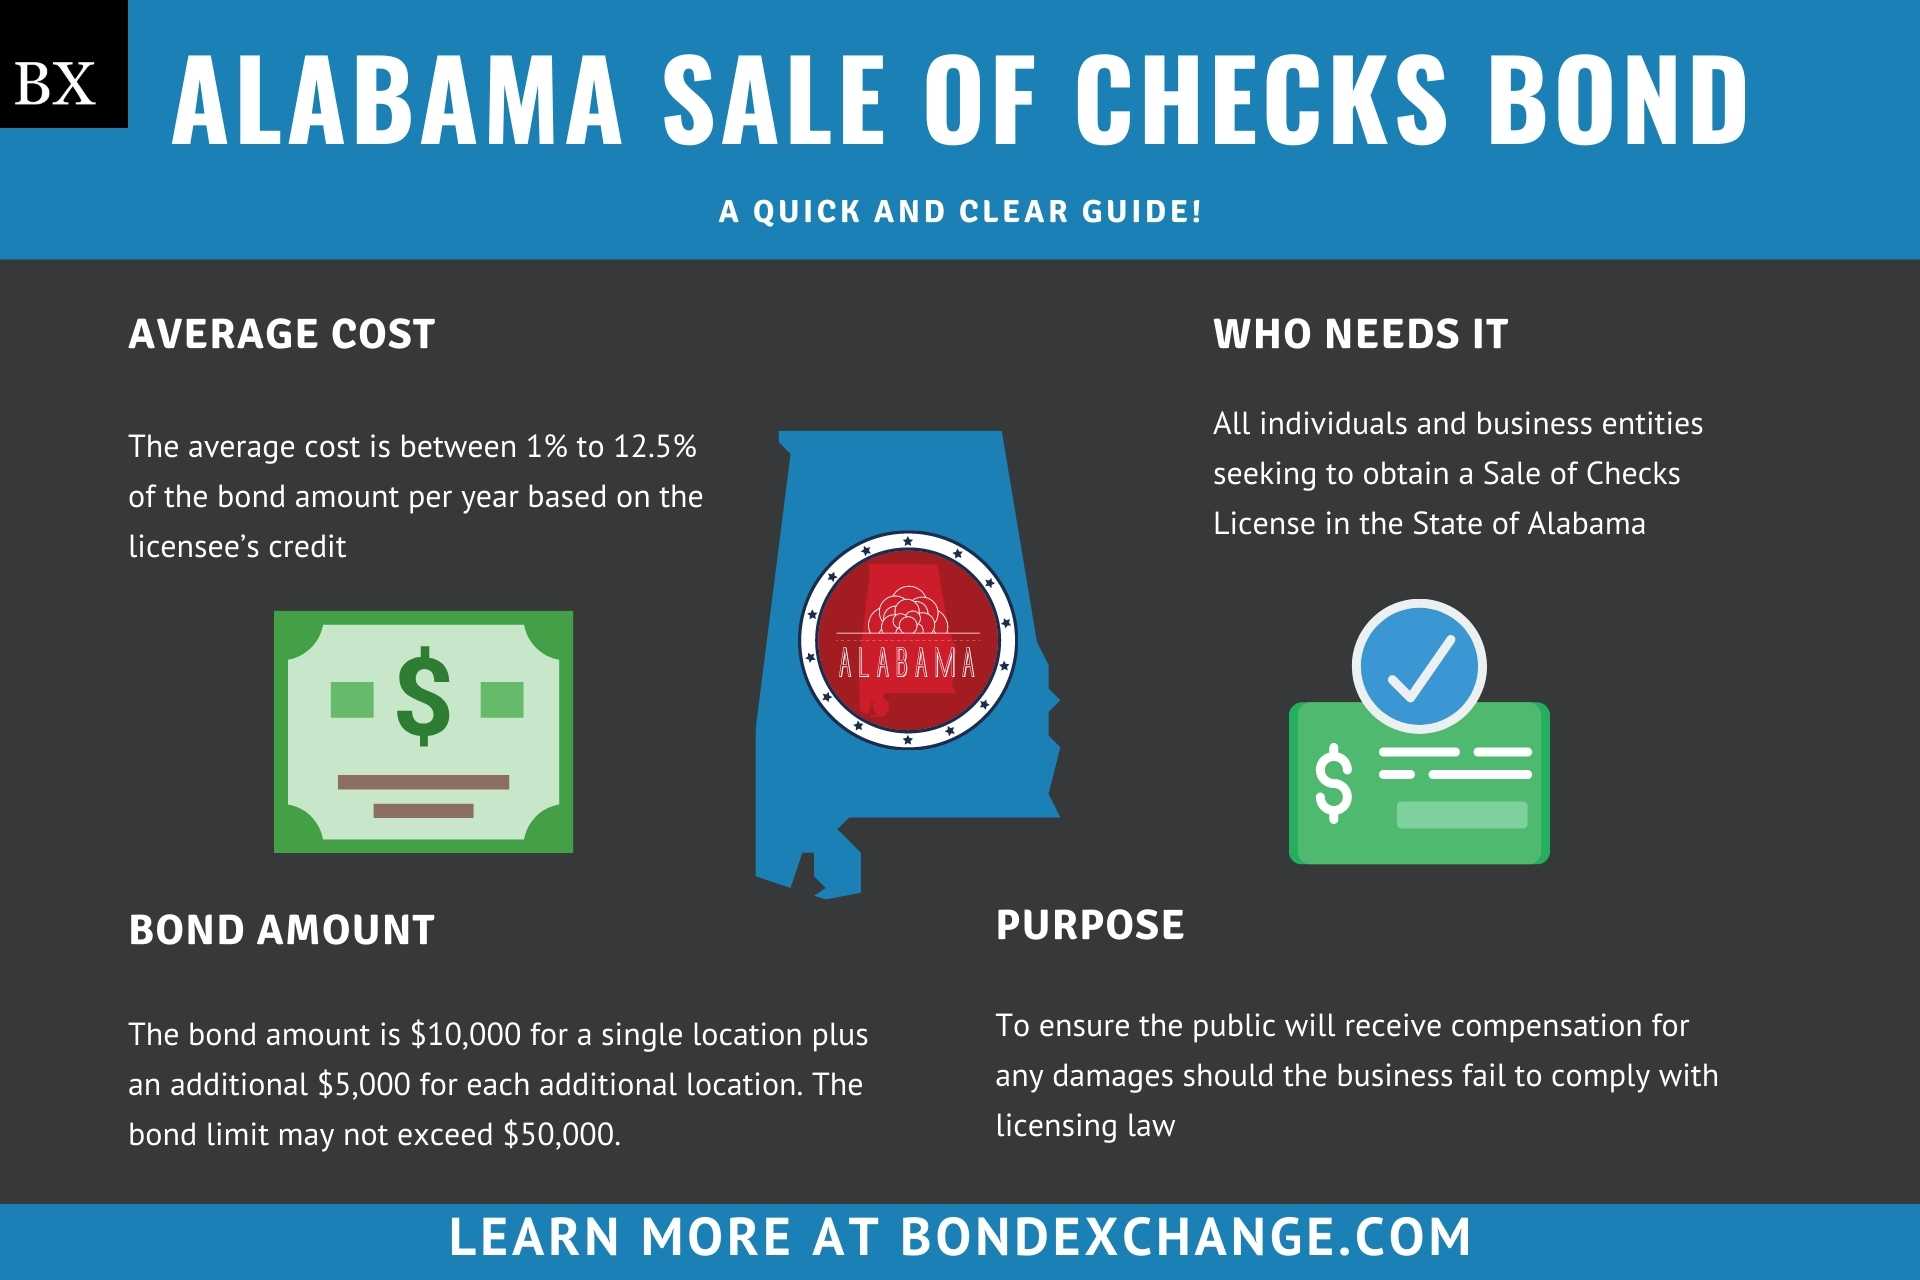 Alabama Sale of Checks Bond